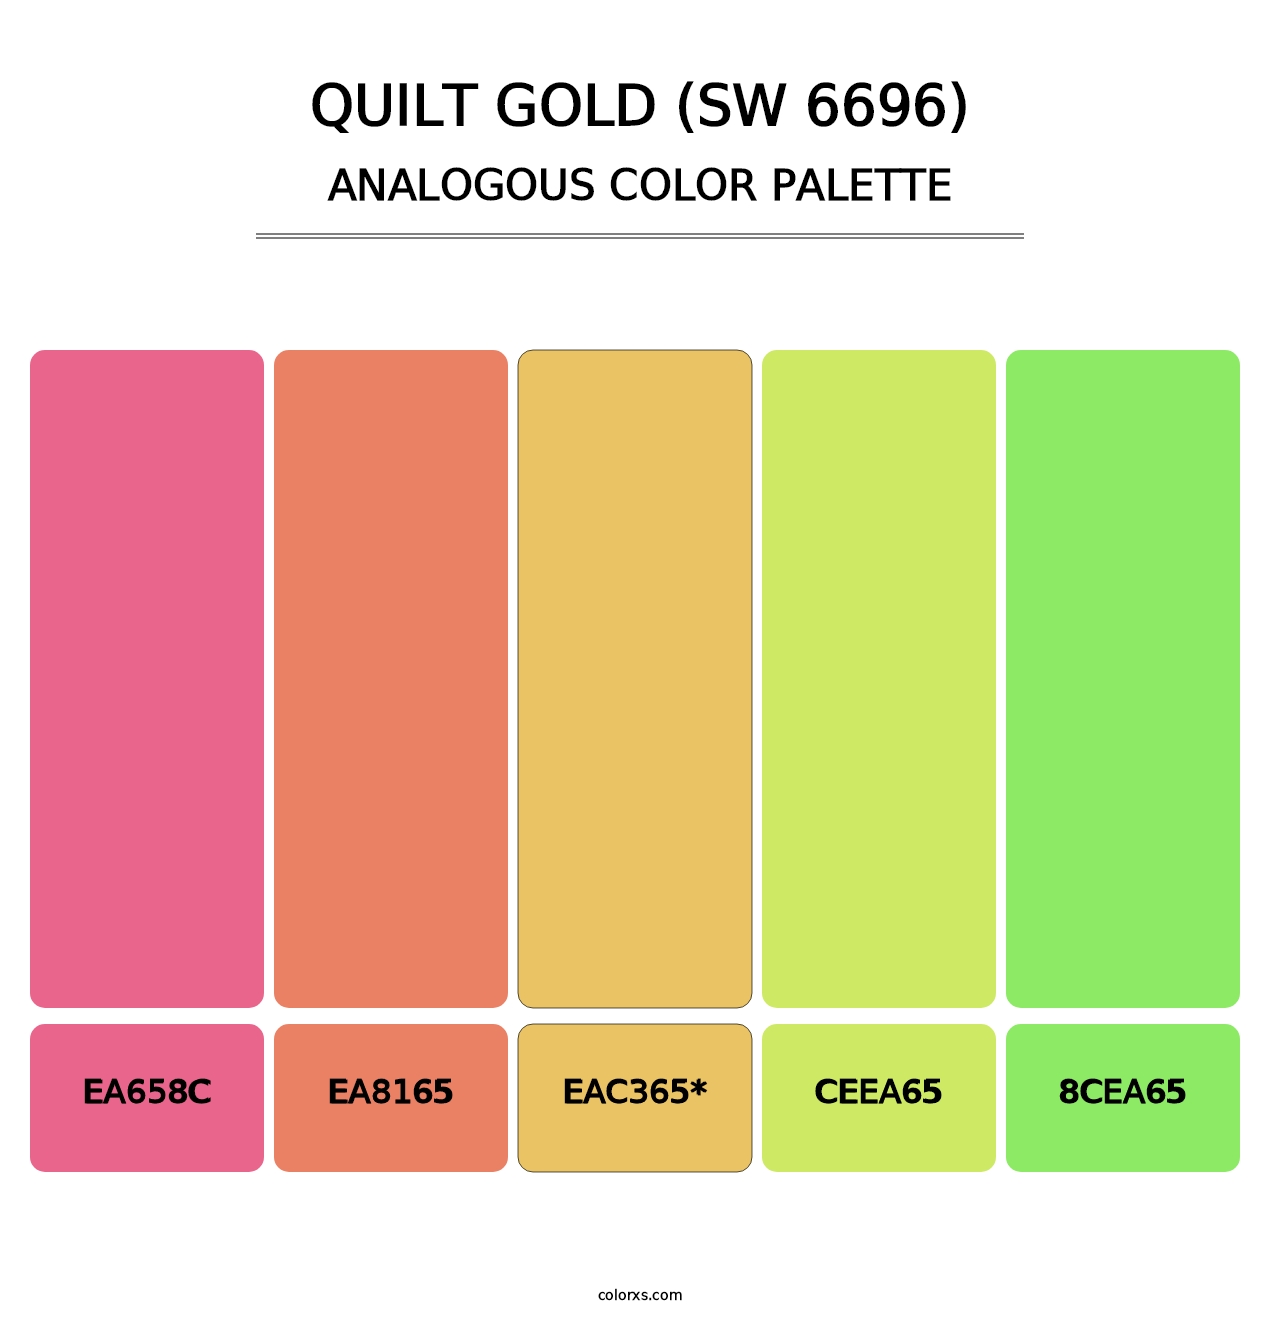 Quilt Gold (SW 6696) - Analogous Color Palette